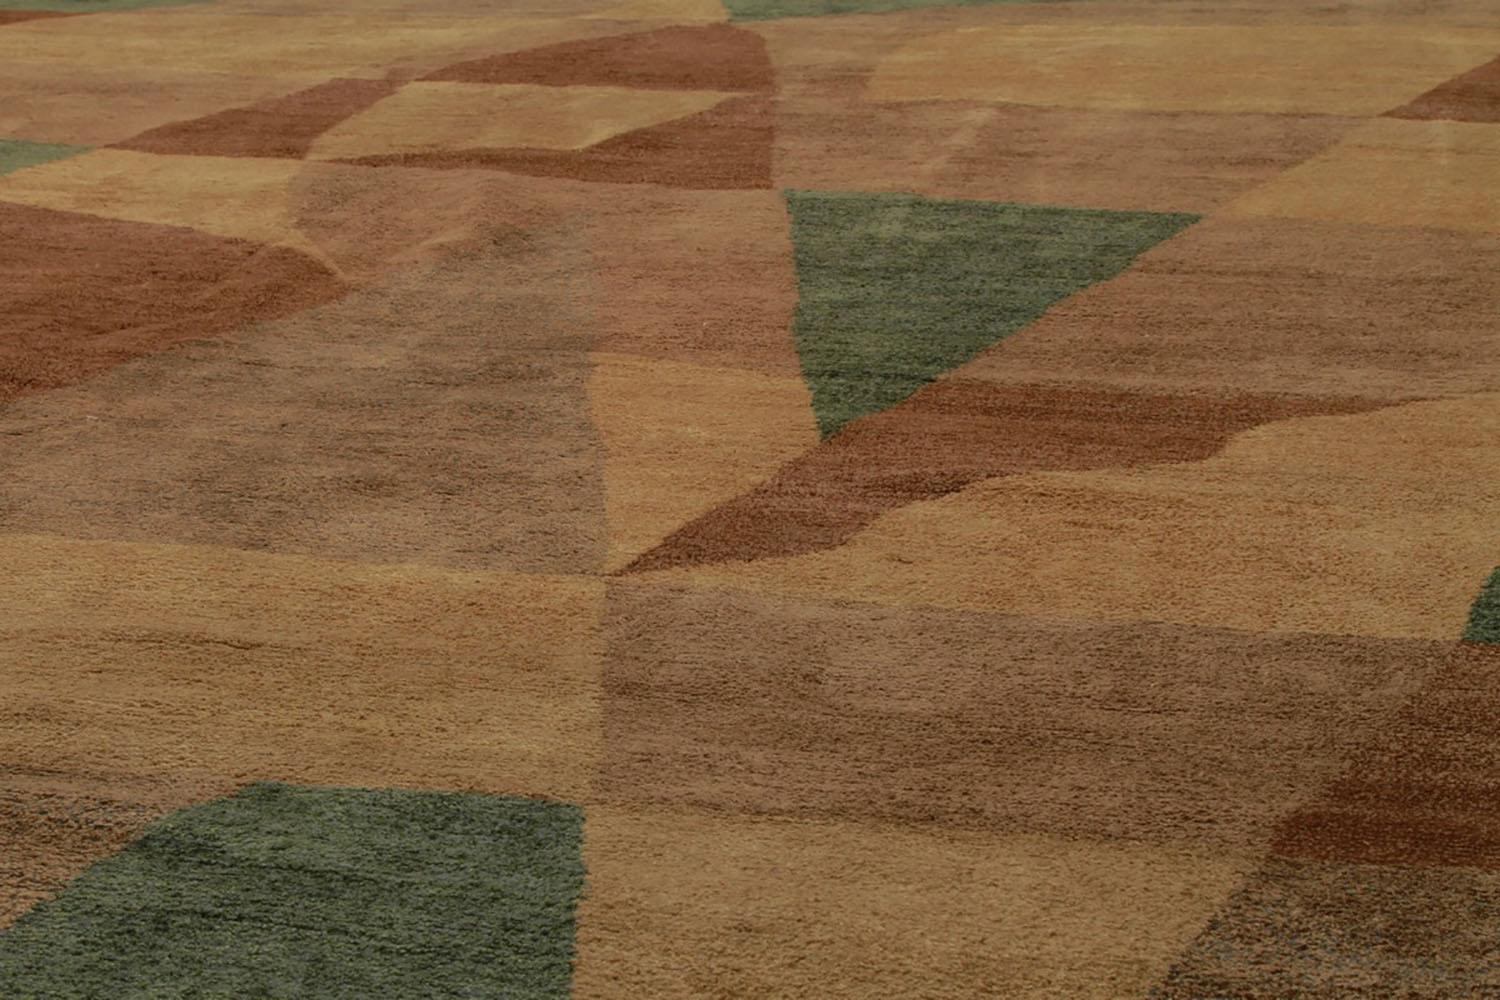 Noué à la main en laine et en soie lumineuse, cet ajout de 8x10 à la collection de tapis européens de Rug & Kilim dépeint un jeu magistral de couleurs et de motifs affectueusement surnommé 